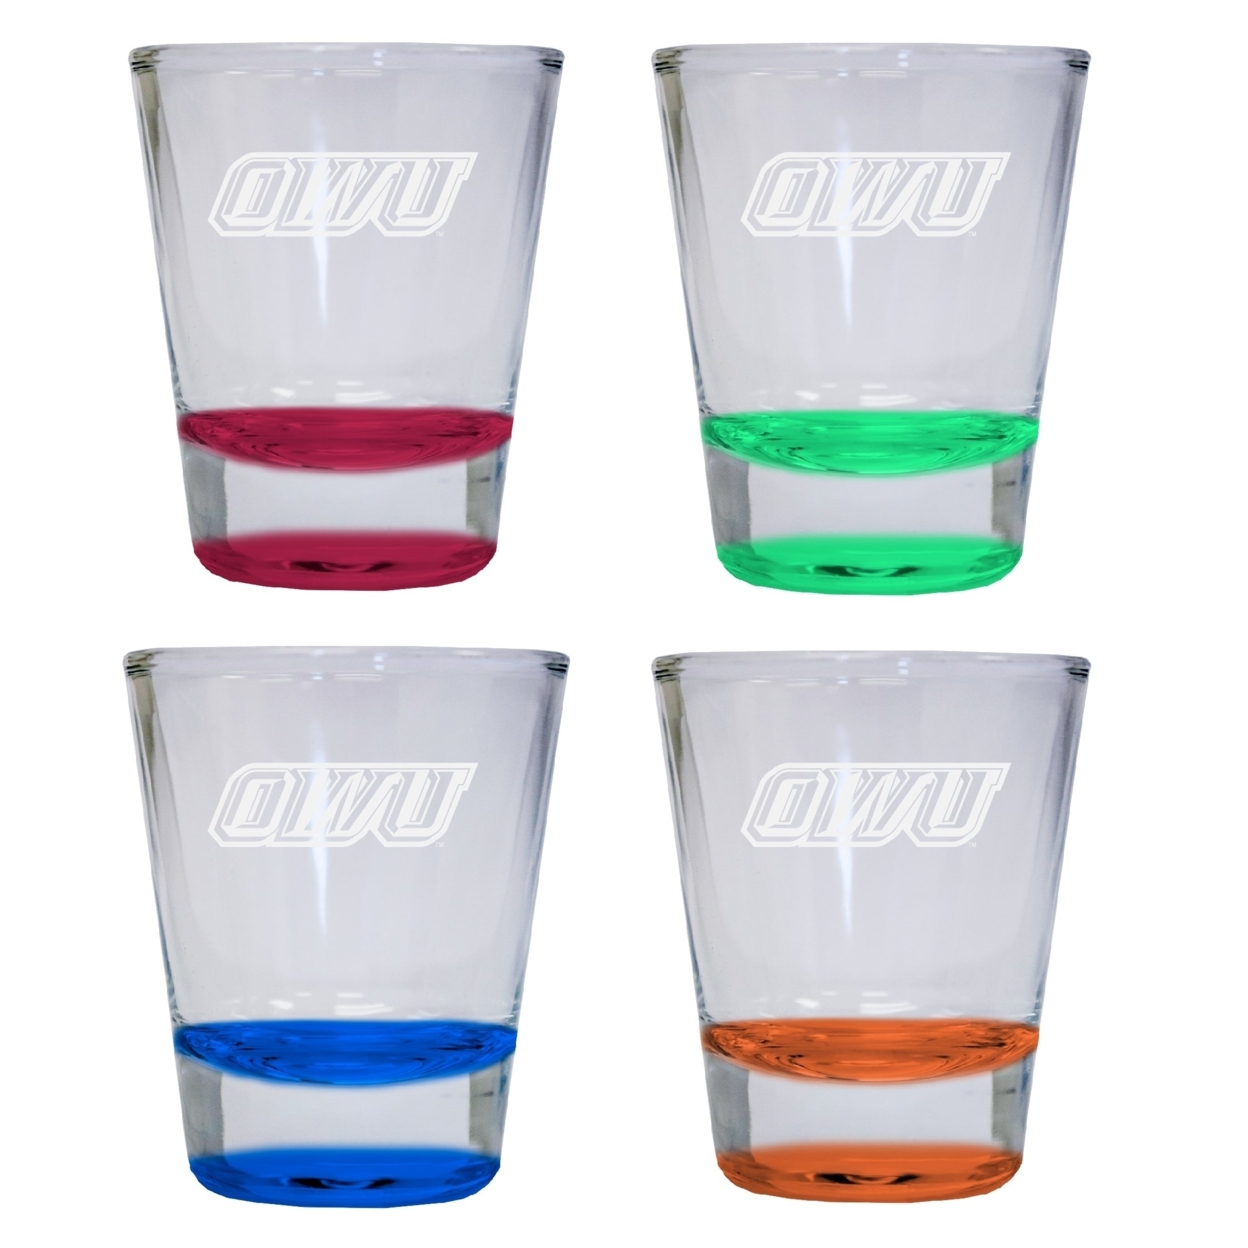 4-Pack Ohio Wesleyan University Etched Round Shot Glass 2 Oz